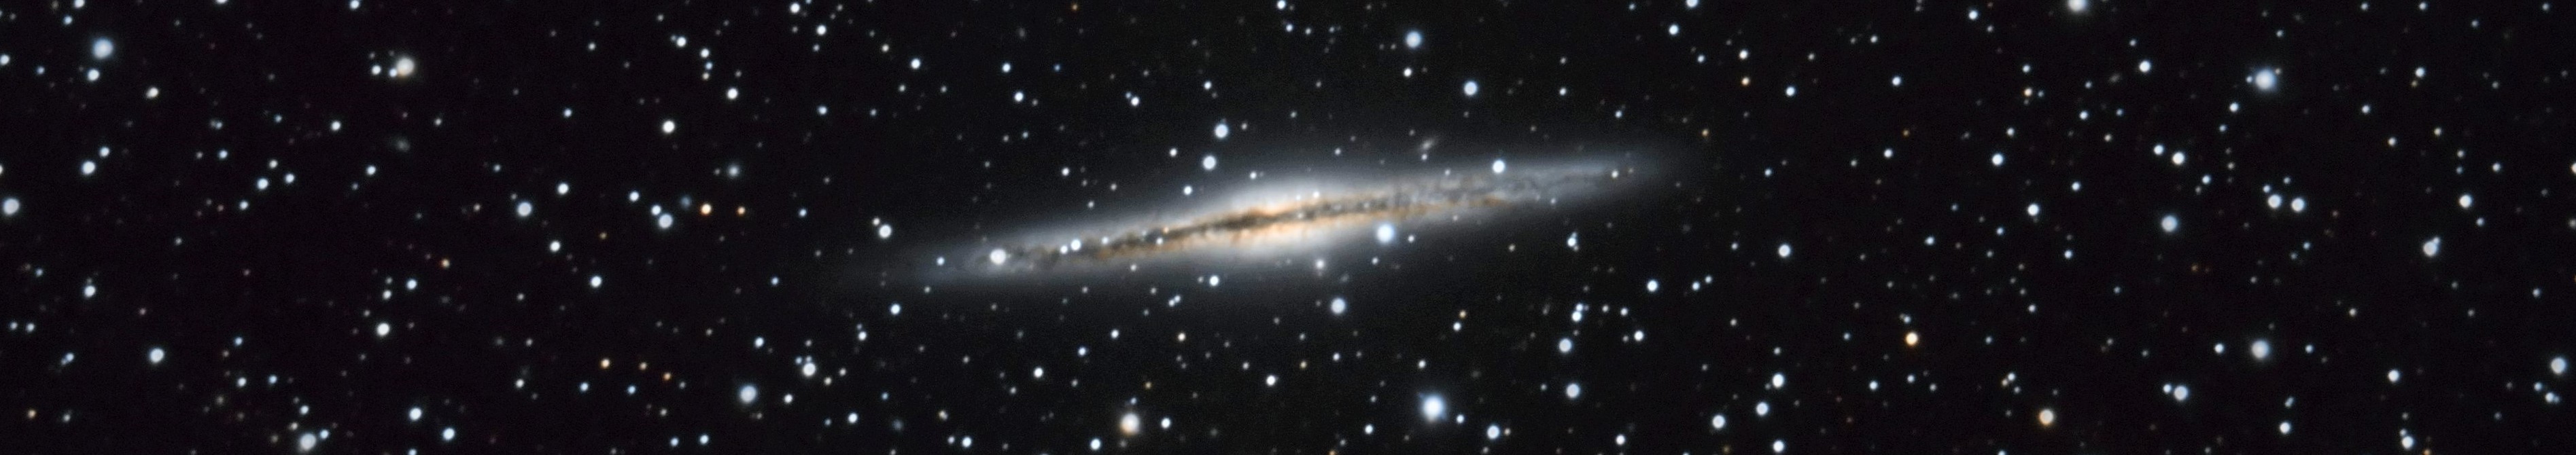 L-RVB NGC891 v2 crop.jpg